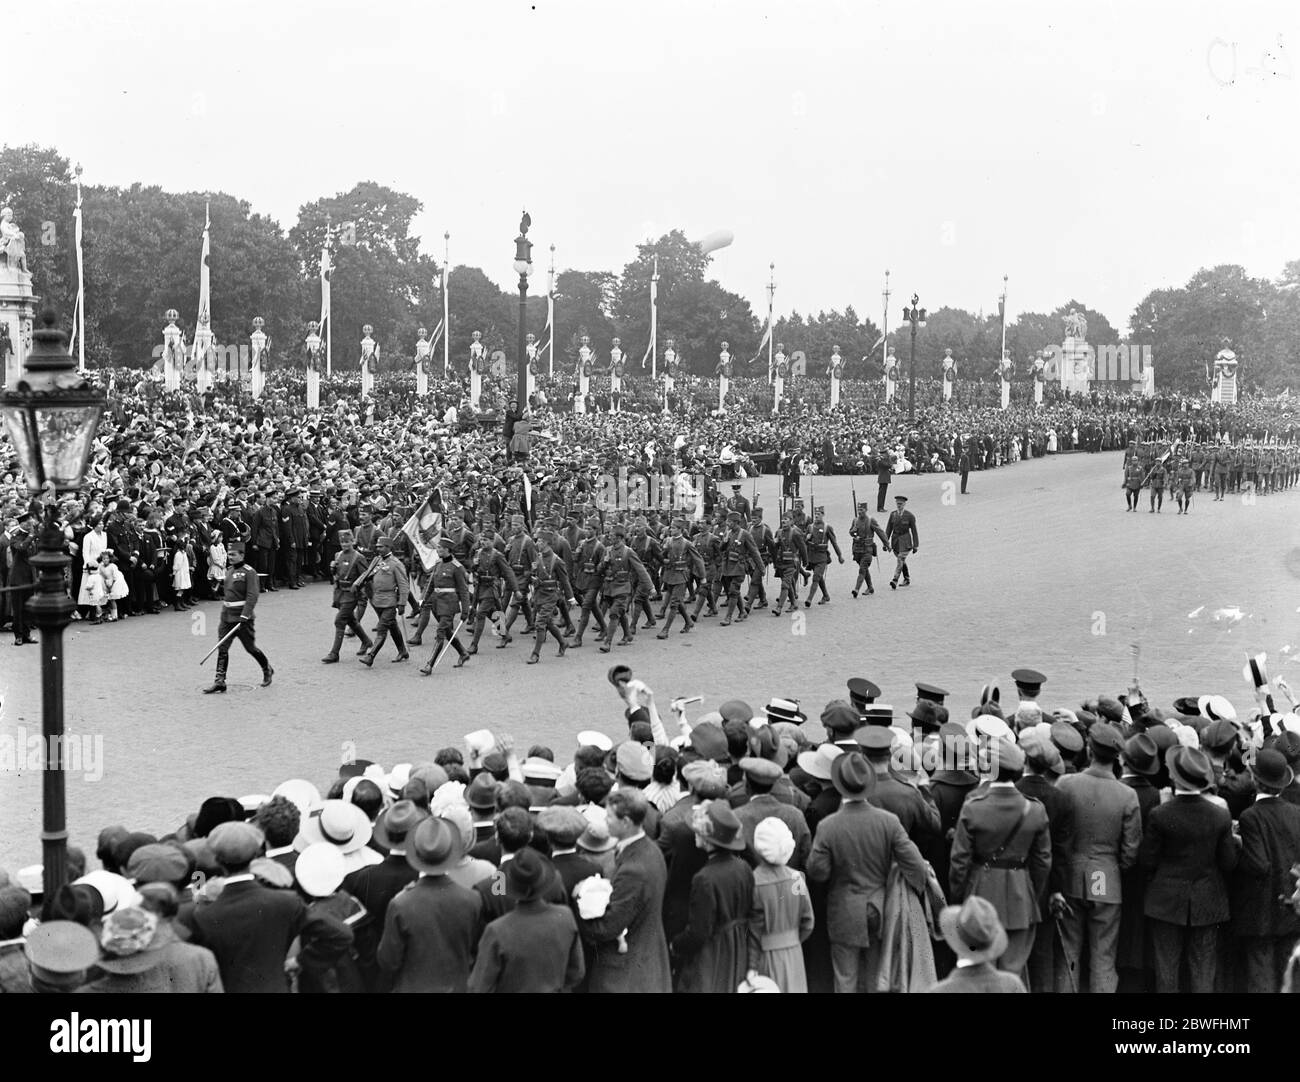 Heute großer Sieg märz . Serbische Truppen passieren die Gärten der Königin vor dem Buckingham Palace. 19 Juli 1919 Stockfoto